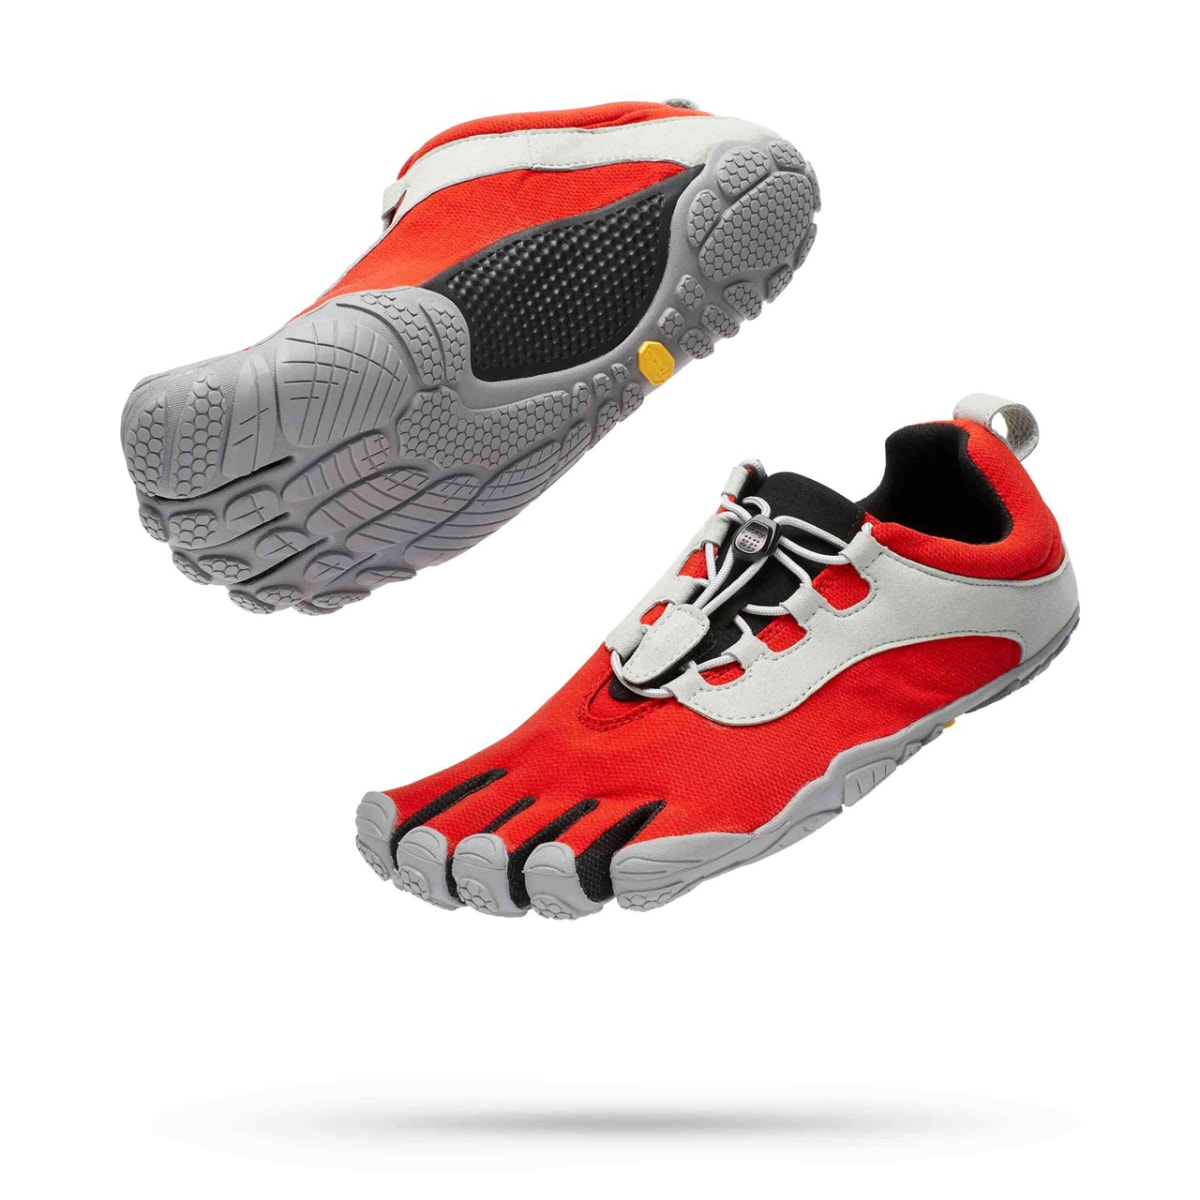 Vivobarefoot vs Vibram FiveFingers running shoes